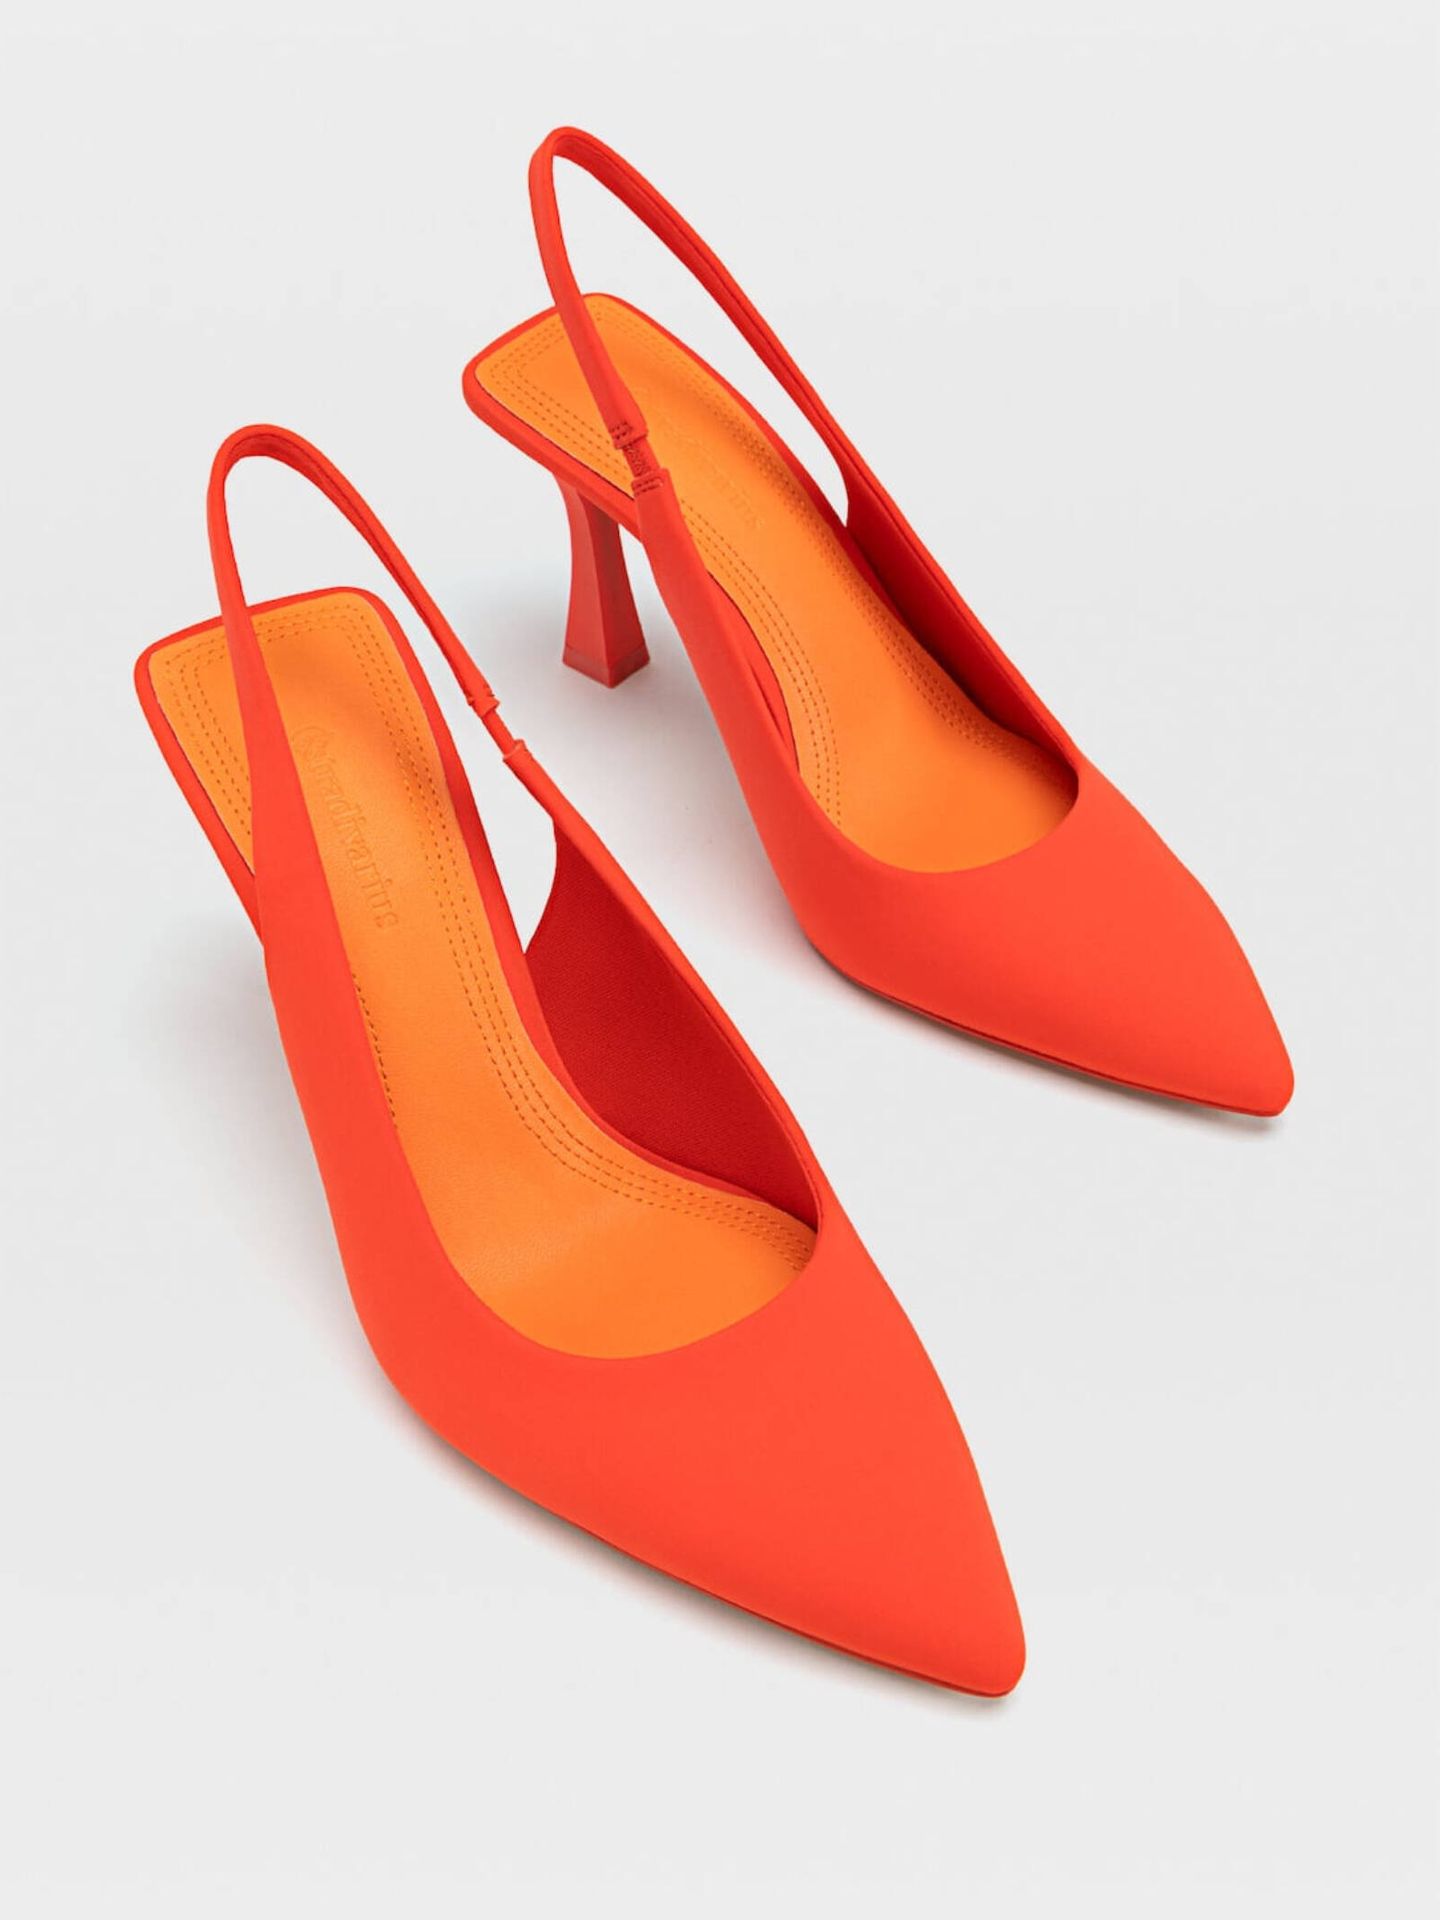 Sandalias de tacón naranjas de Stradivarius. (Cortesía)